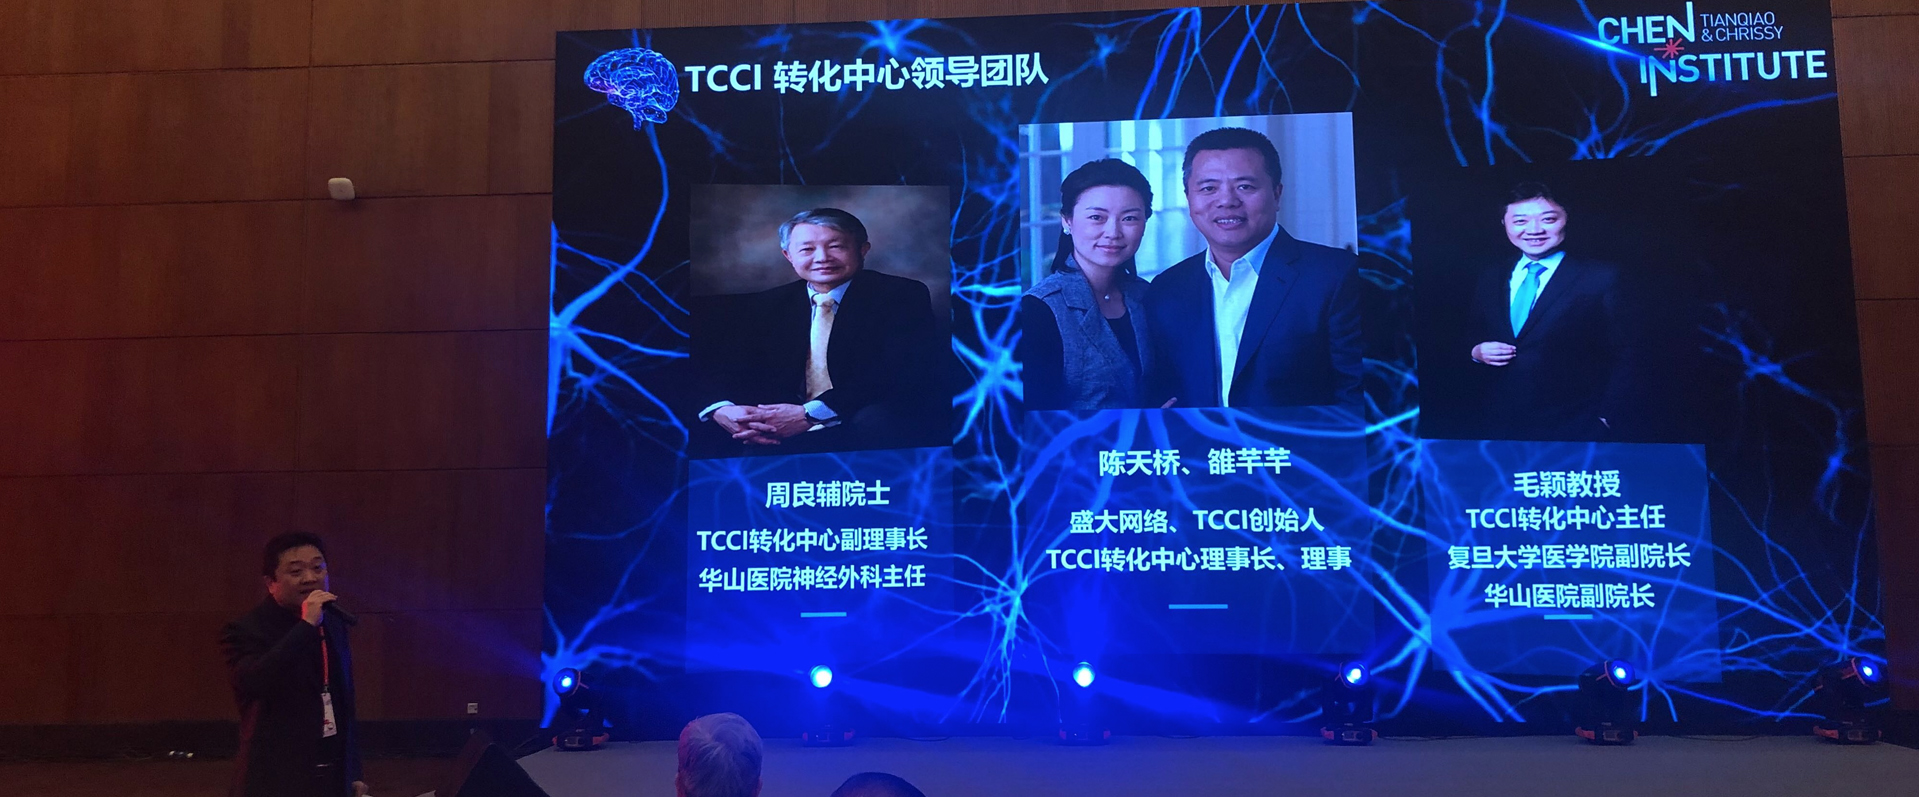 TCCI全程支持中国最大规模神经科学盛会发布TCCI中国战略